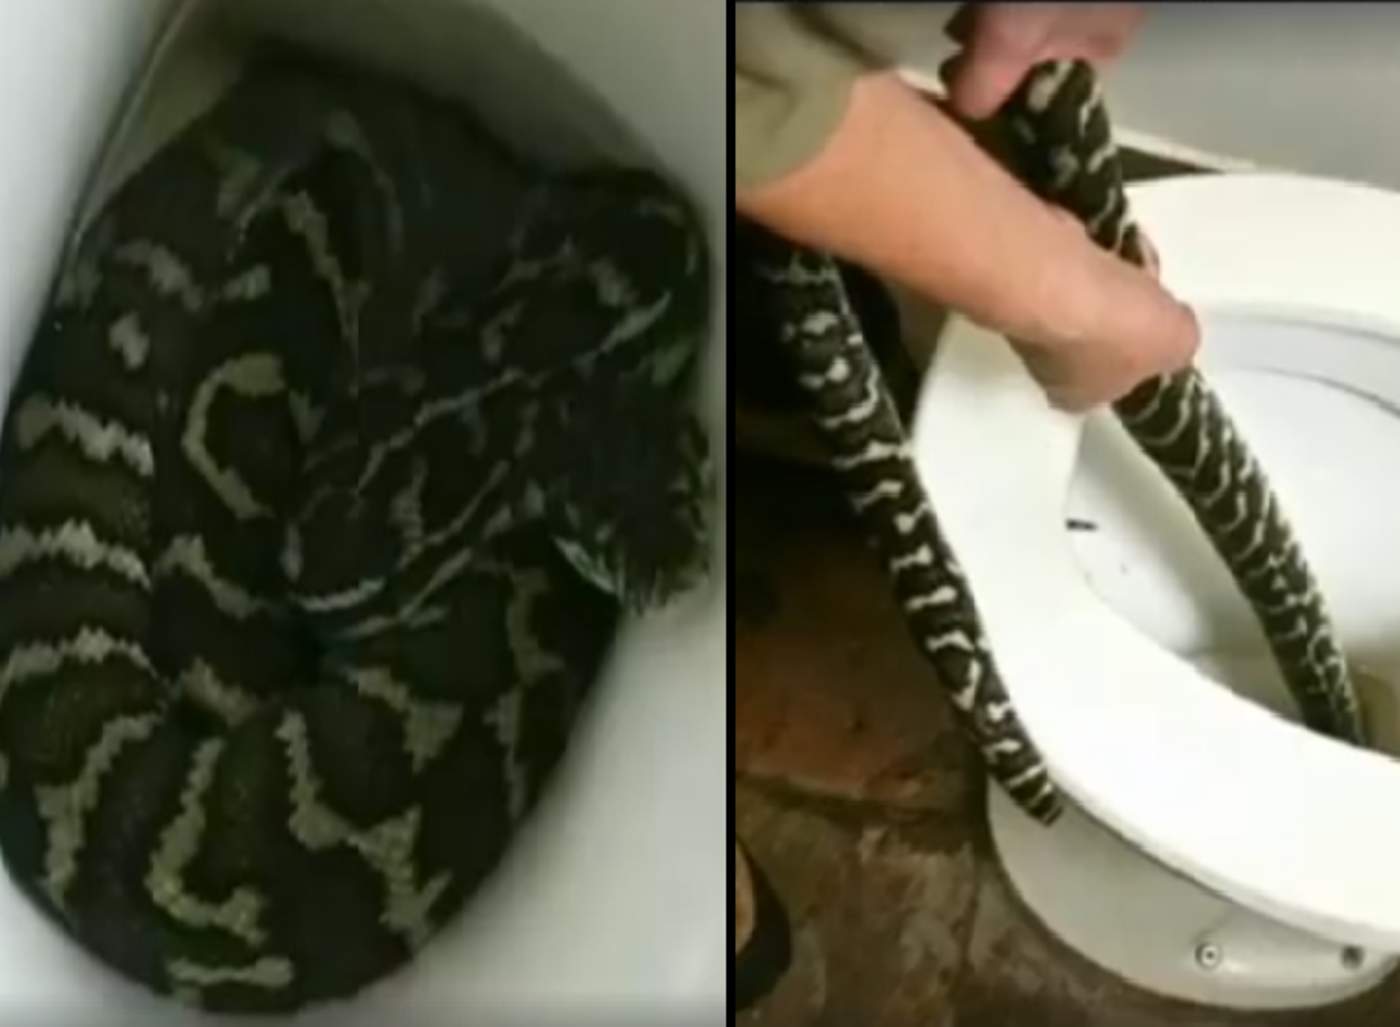 Expertos dicen que encontrar serpientes en el inodoro, en esta zona del país, no es poco común. (INTERNET)